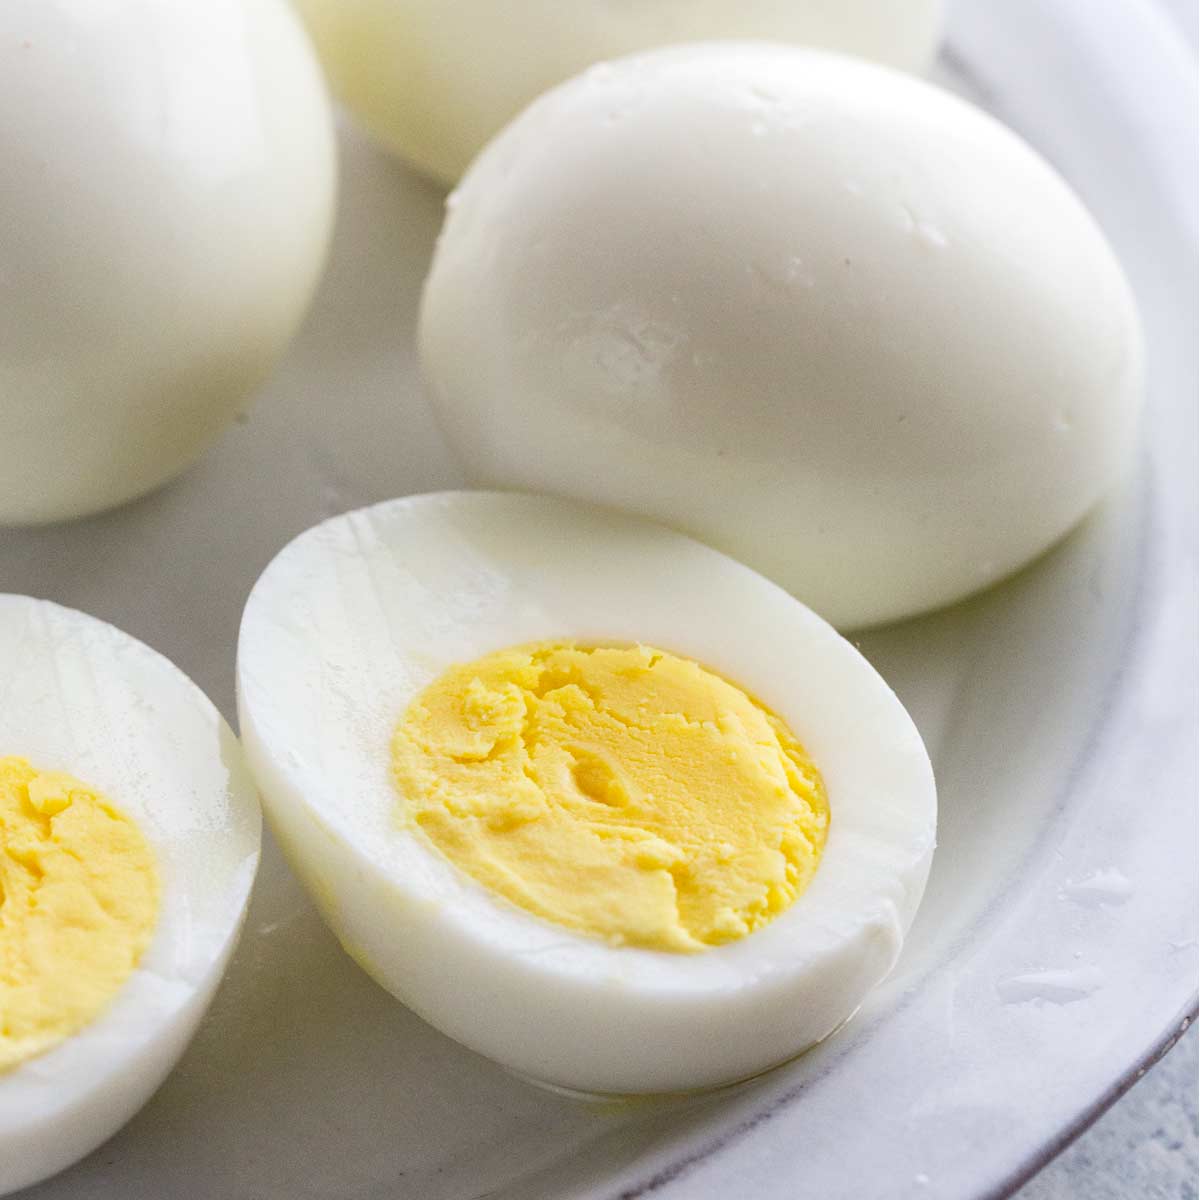 Luộc trứng, thêm vài giọt này vỏ tự động bong ra bất ngờ, trứng ngon mềm thơm - Ảnh 3.